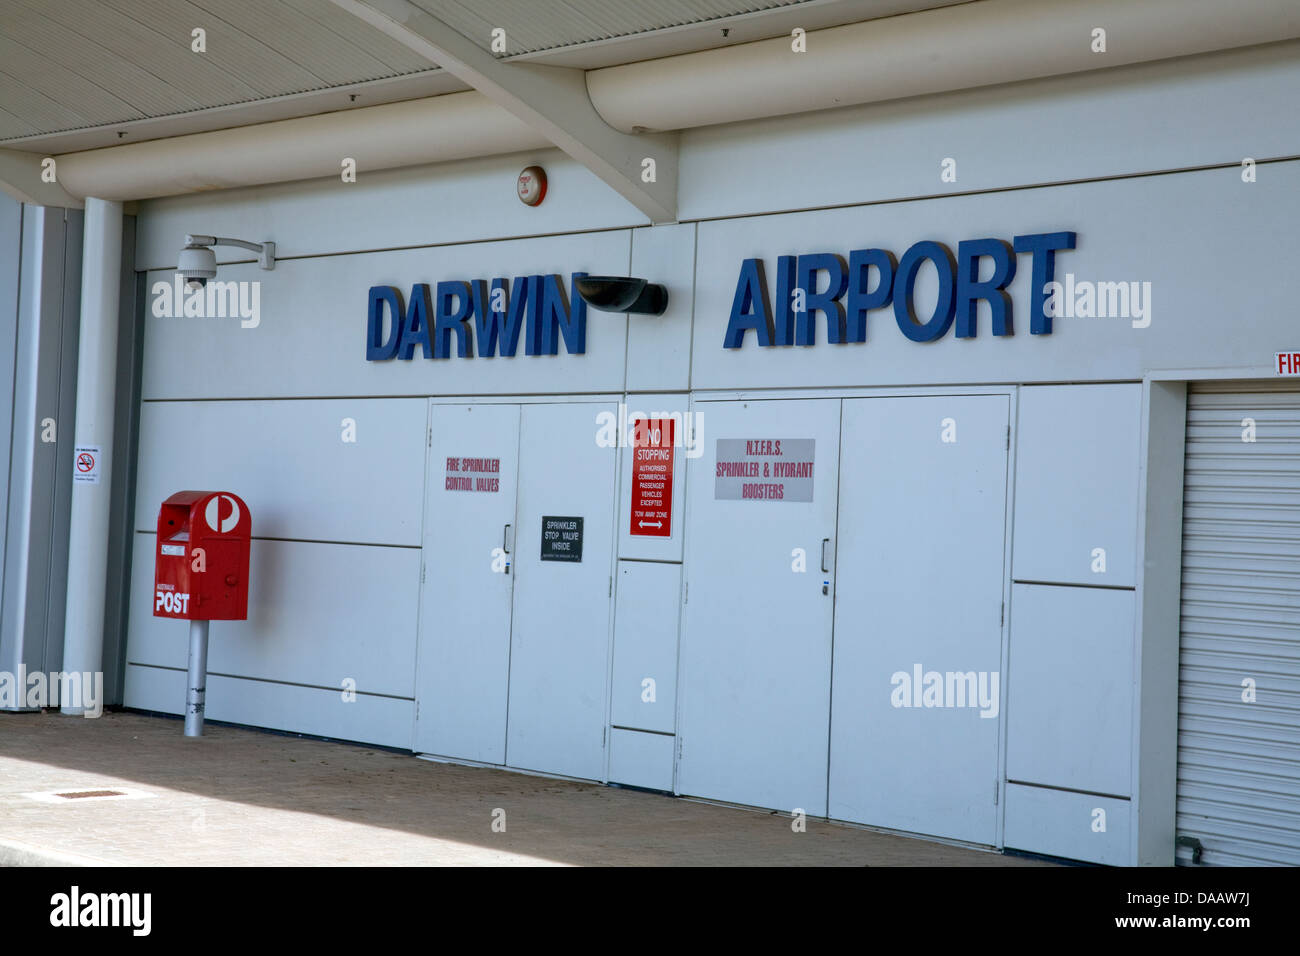 darwin airport Stock Photo